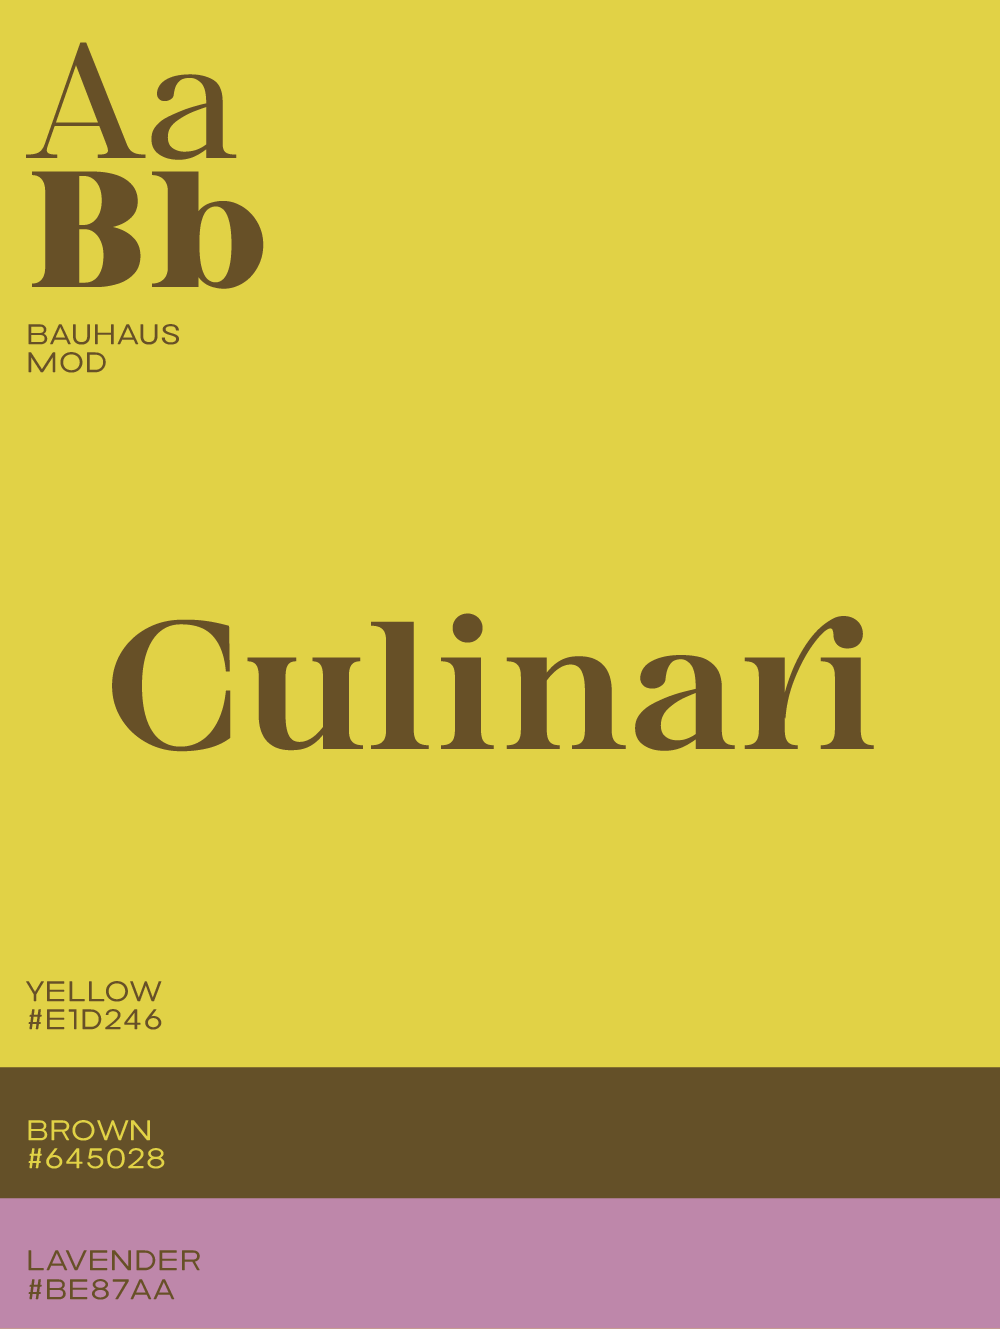 Logo Font Bauhaus Mod